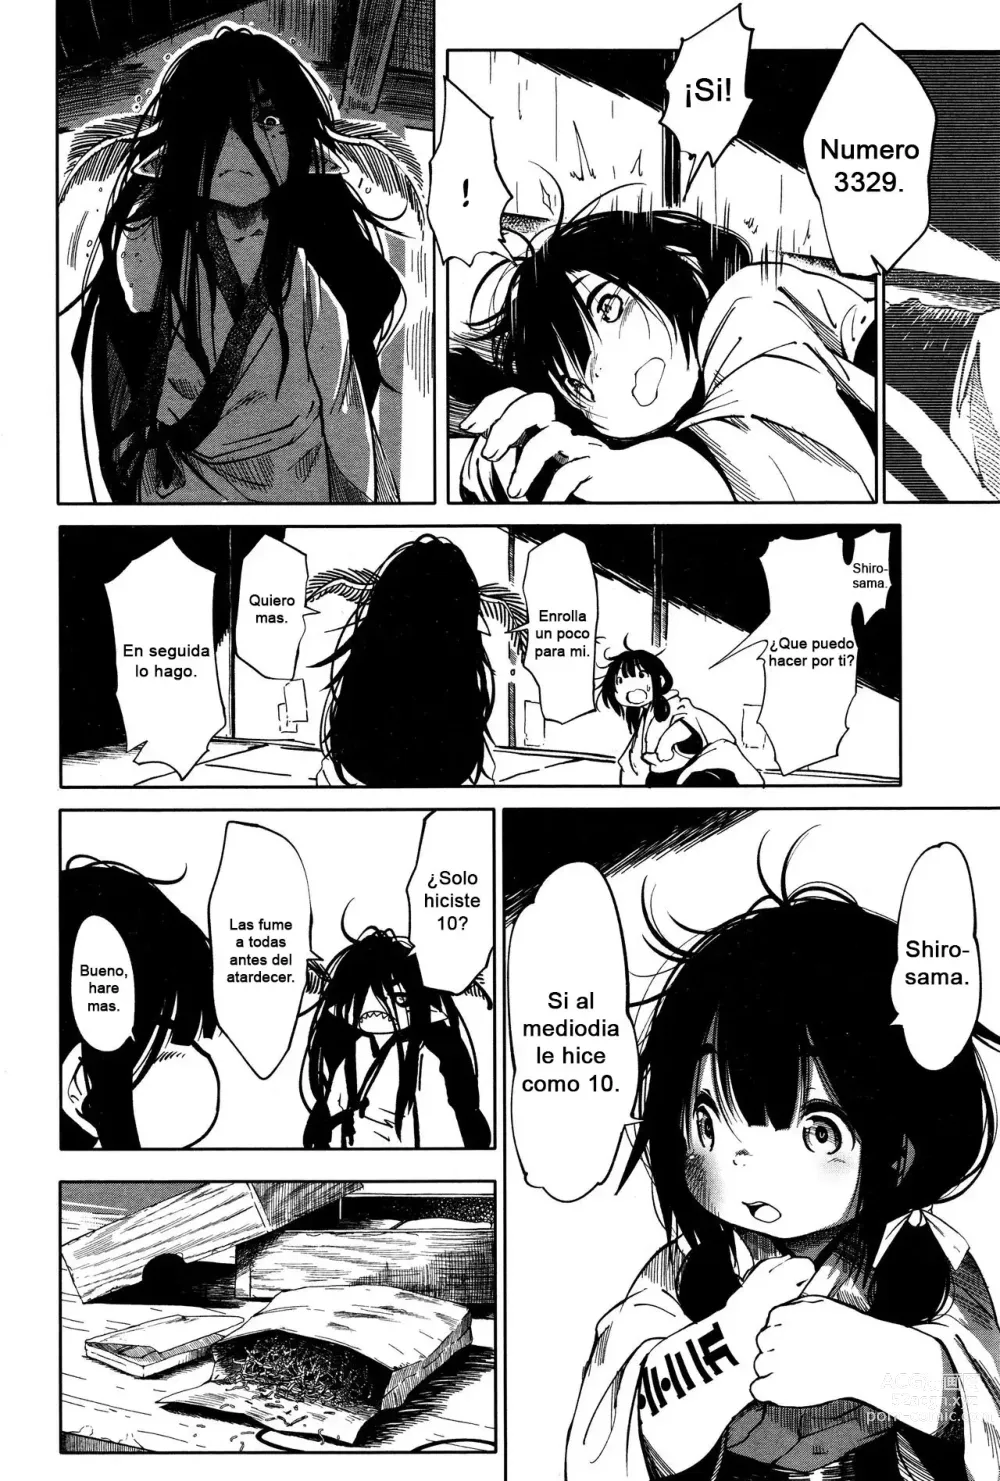 Page 7 of manga Silken Arm